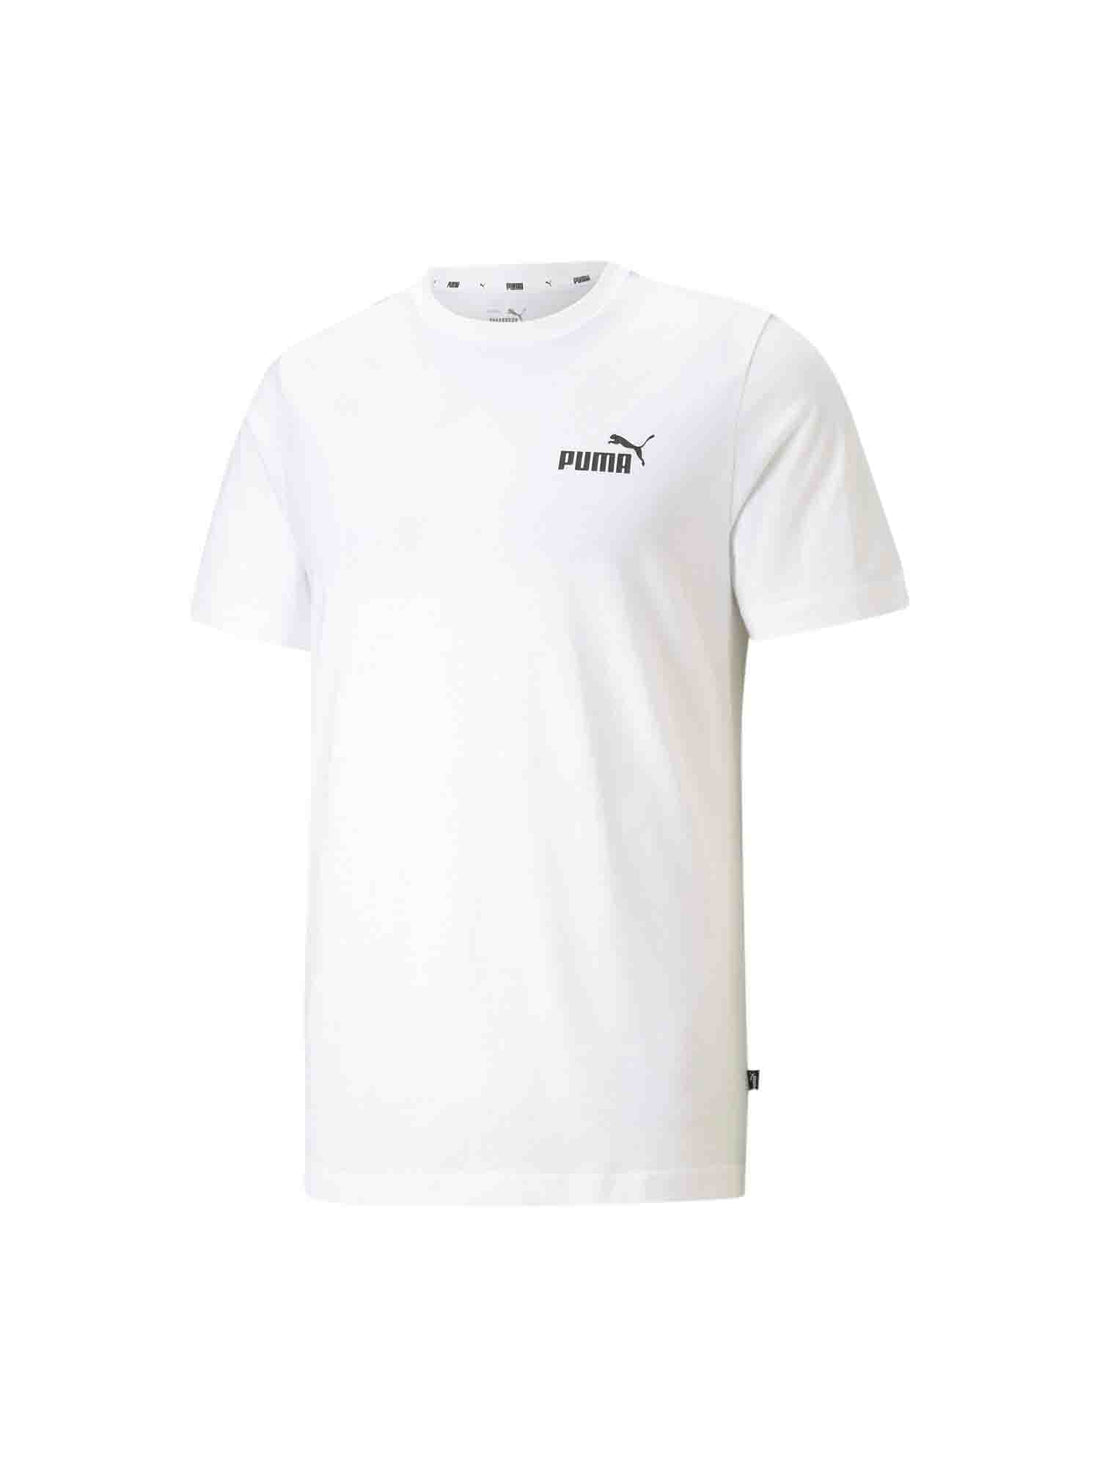 Puma T-shirt 586668